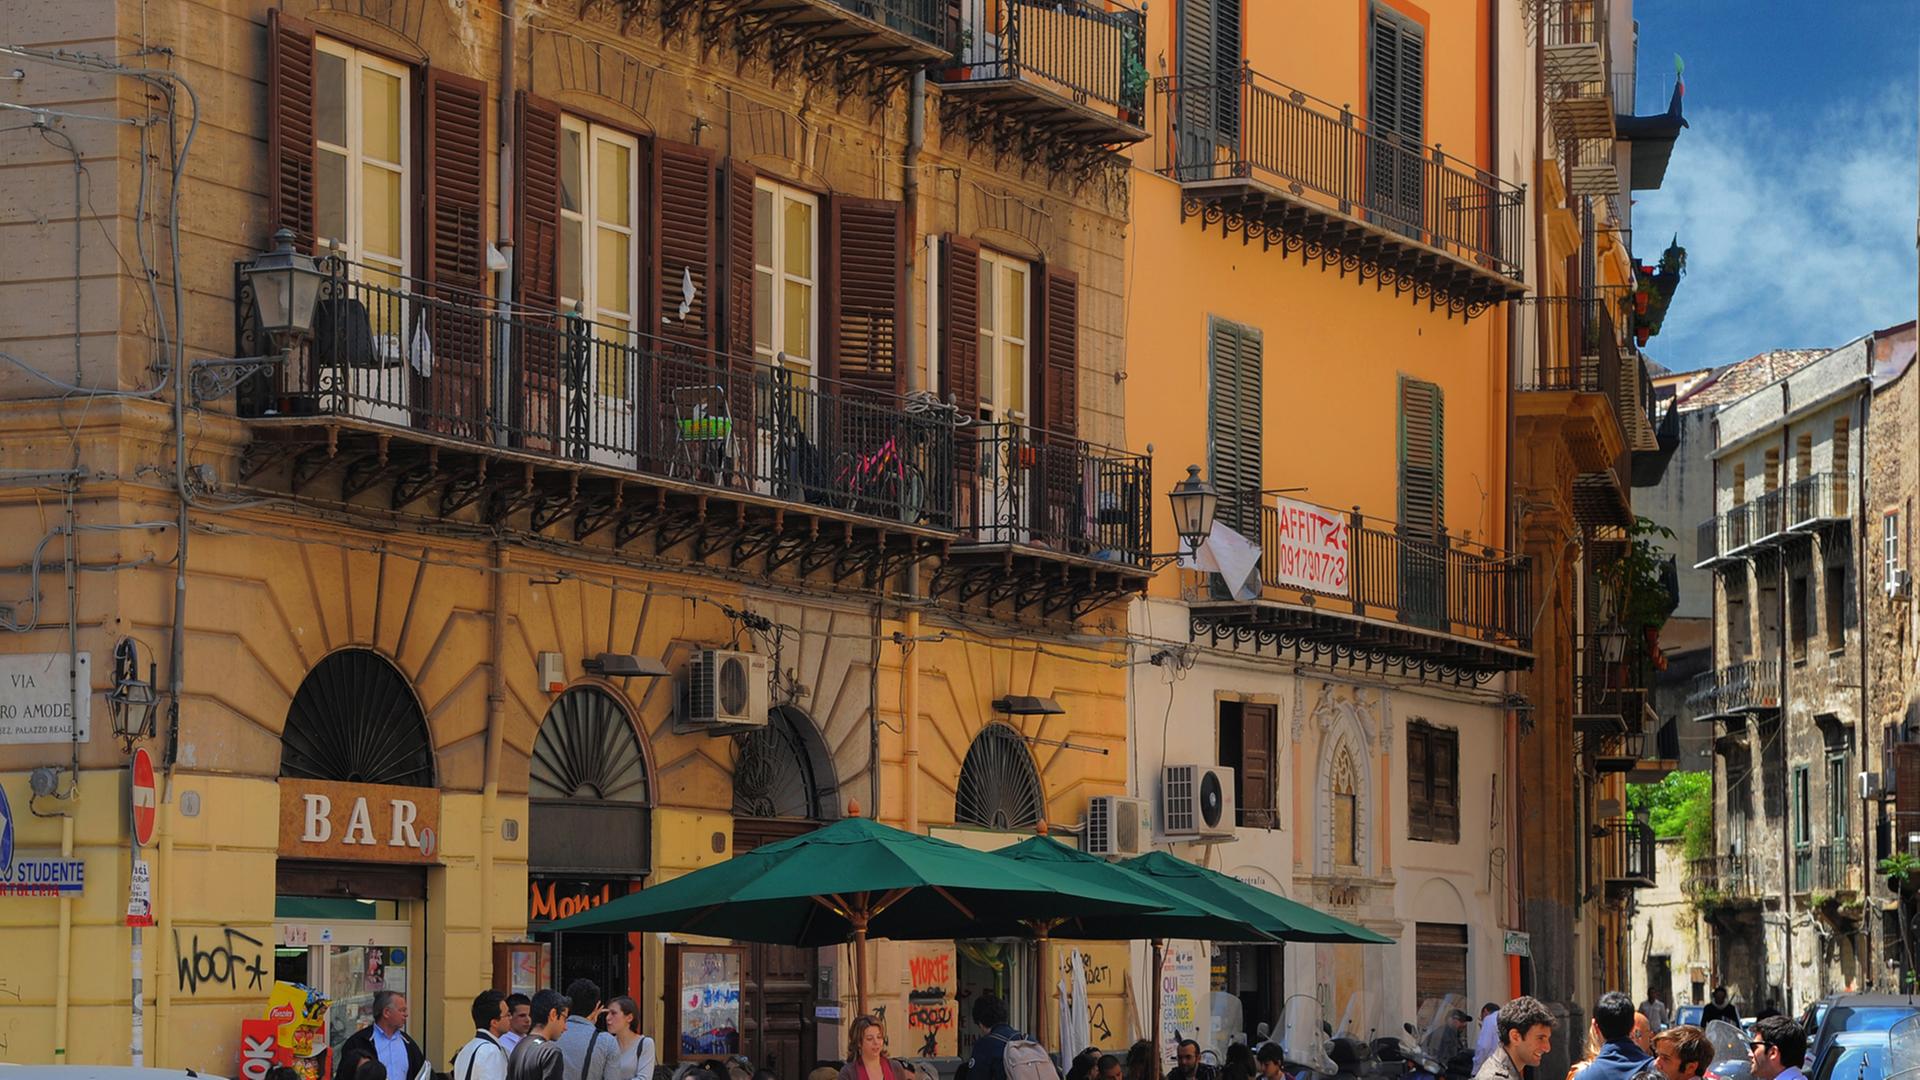 Blick auf eine Altstadtgasse in Palermo